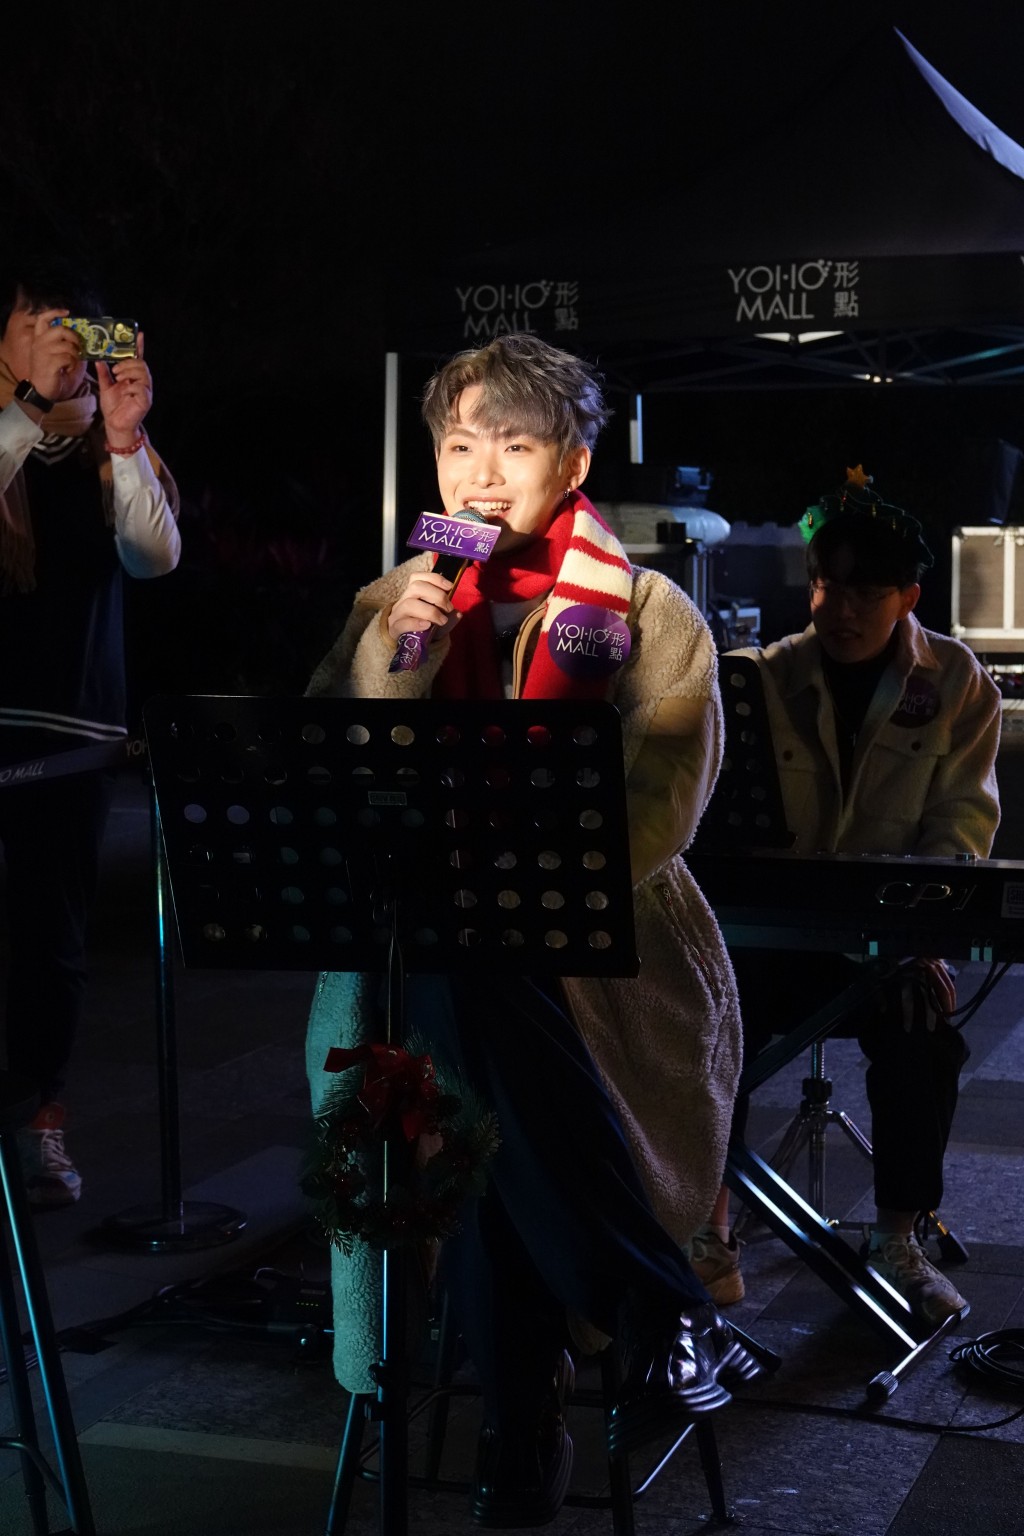 12月24日在 Yoho mall 參與「聖誕Chillax Party音樂表演」。